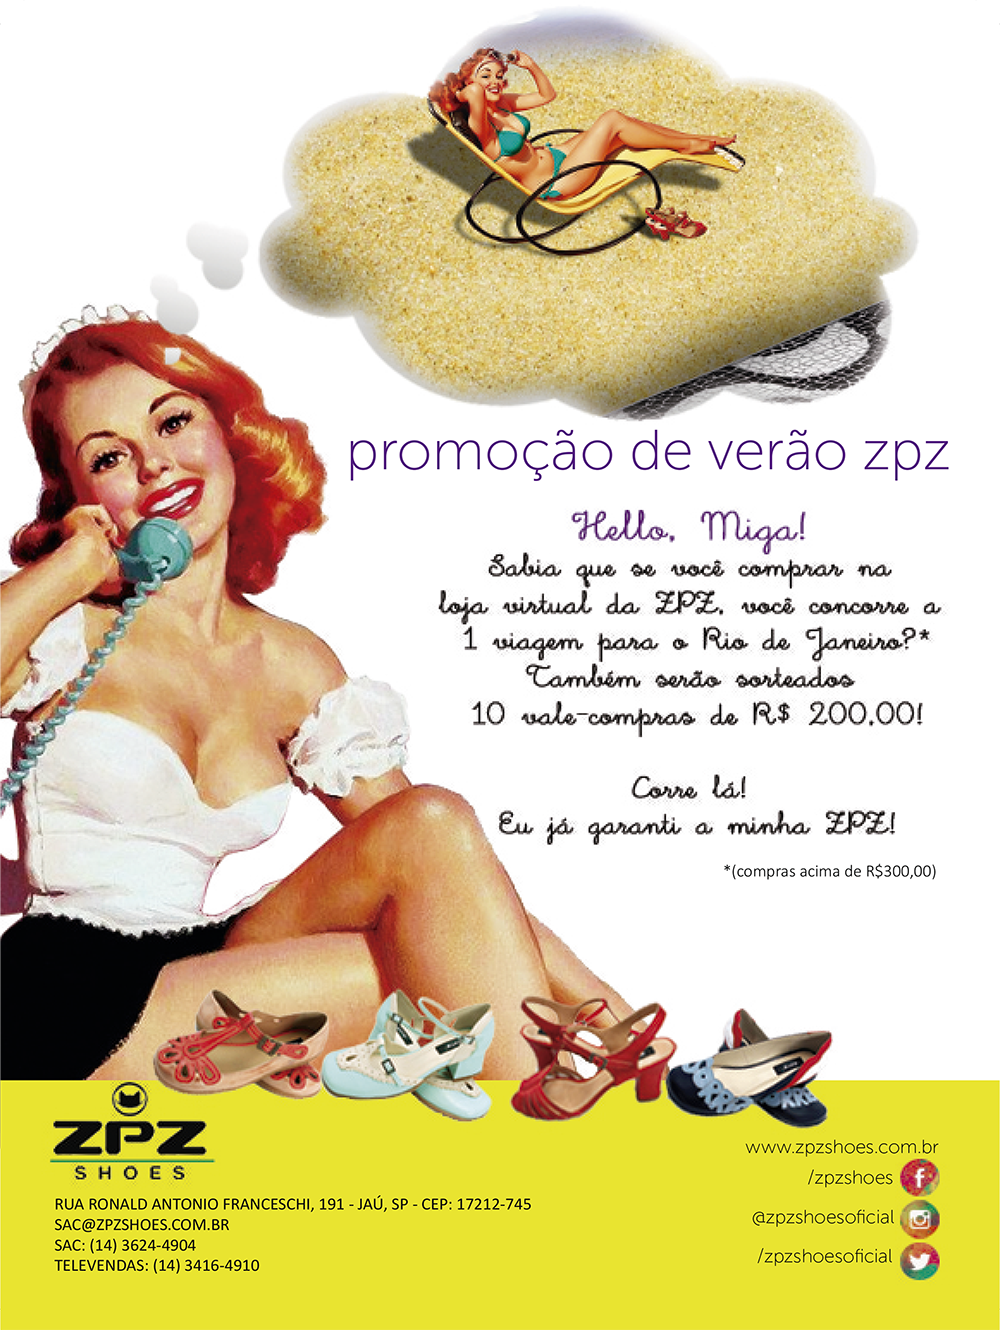 Advertising  Promotion publicidade Anúncio Online calçados shoes diva pinup